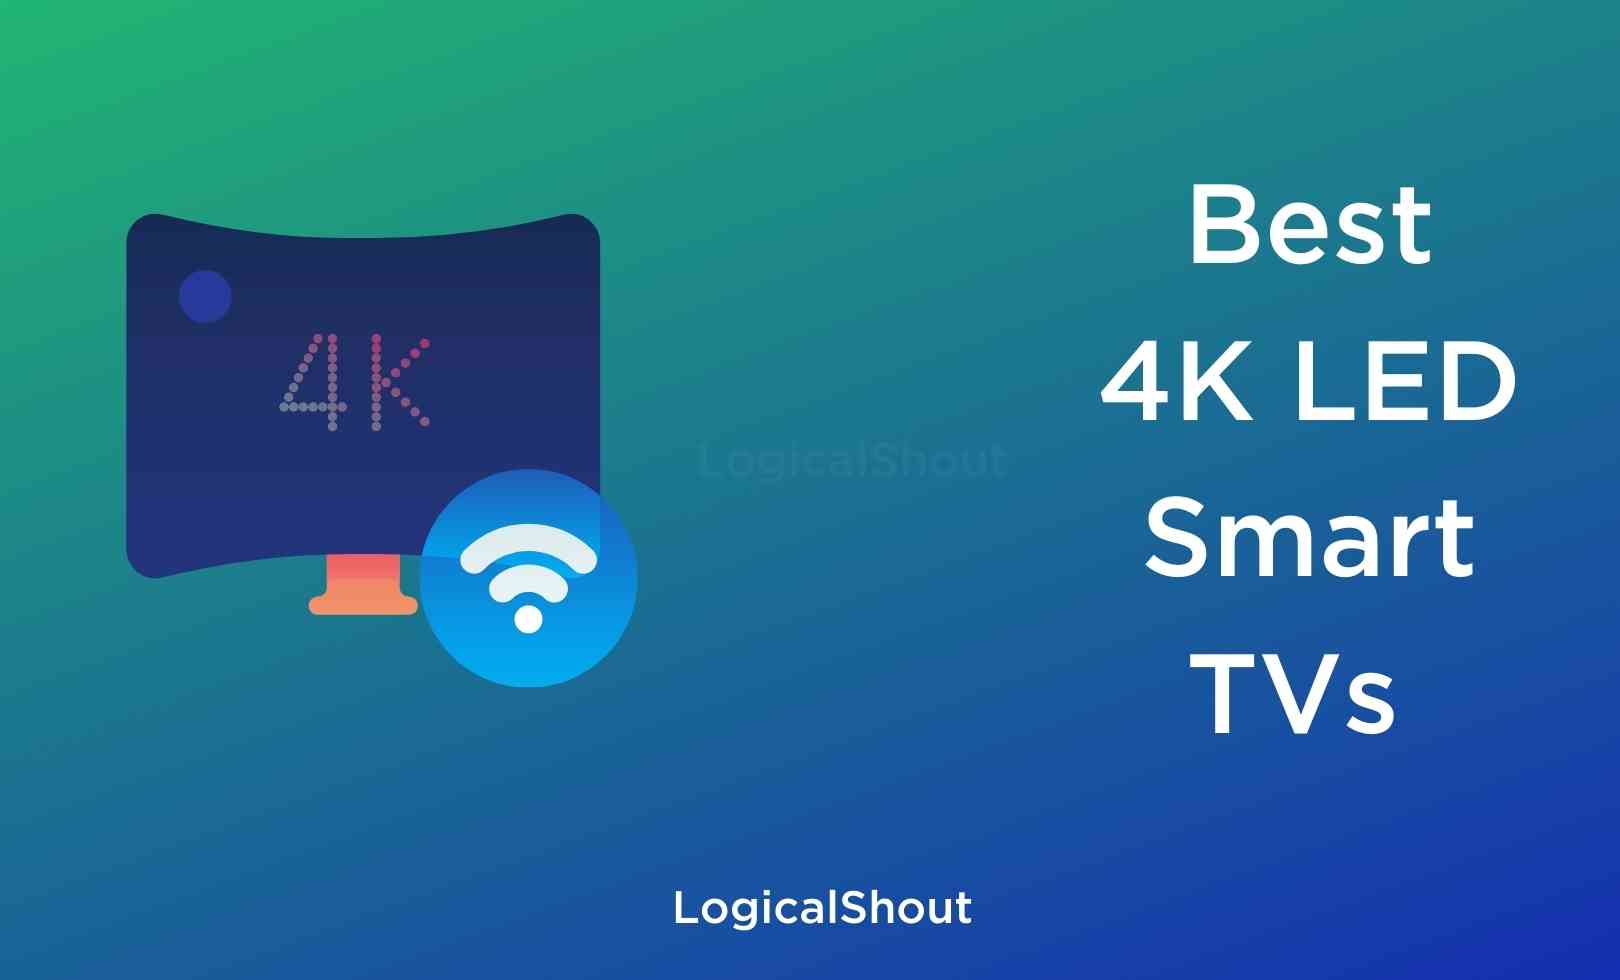 Best 4K Smart TVs